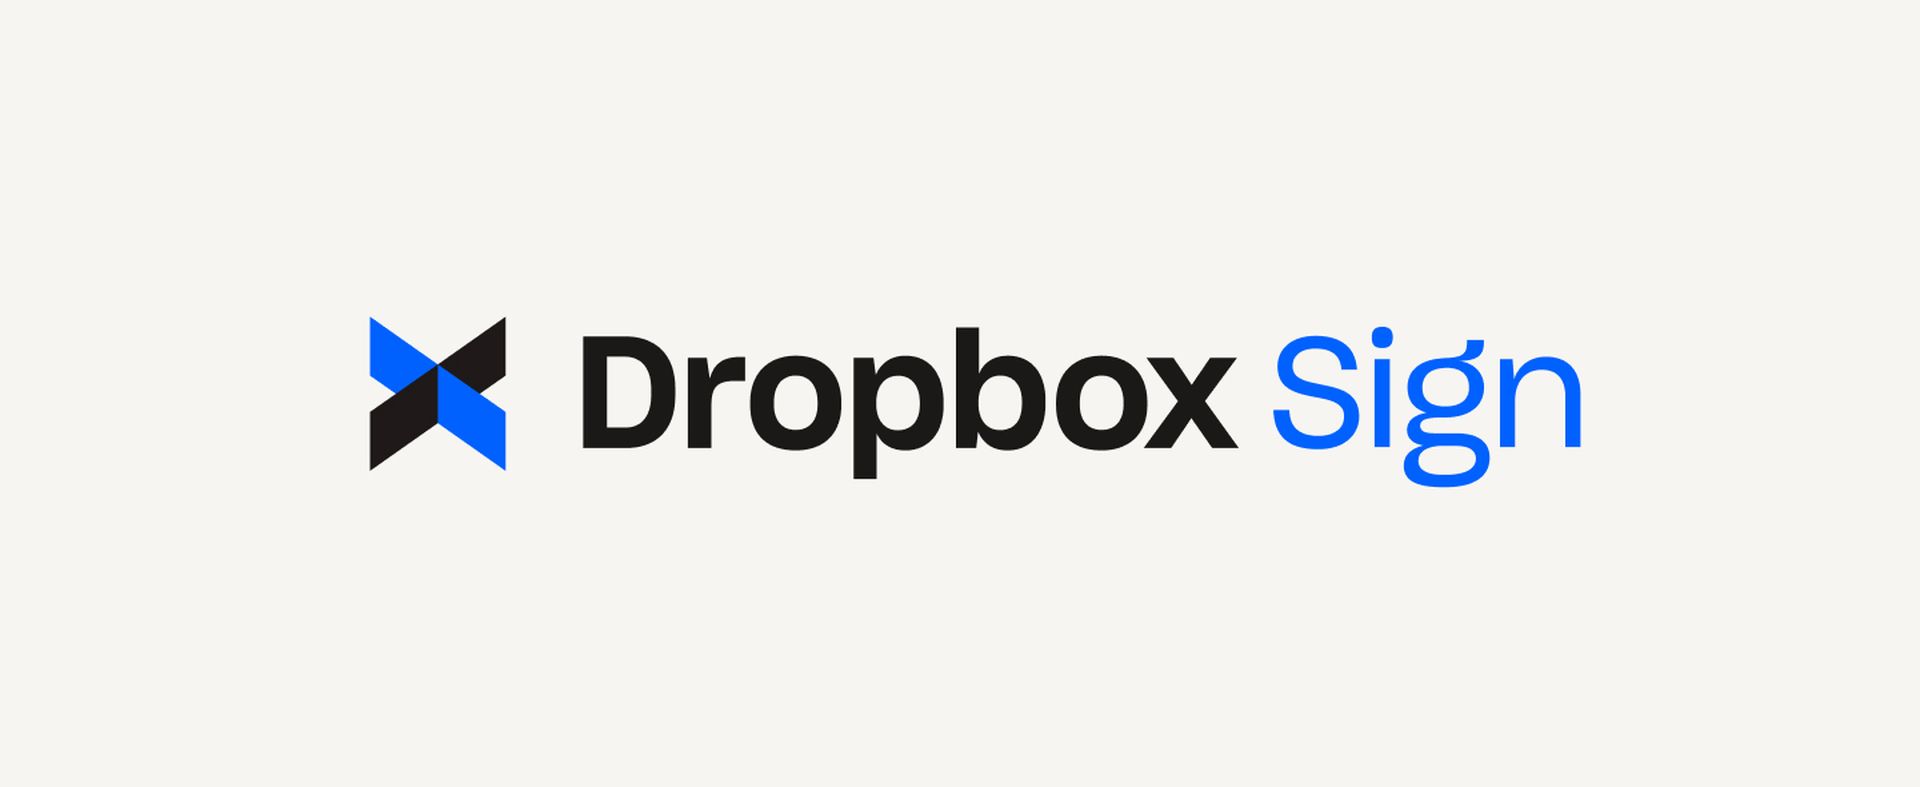 L'attacco Dropbox Sign: un approfondimento sulla sicurezza dei dati e sulle implicazioni